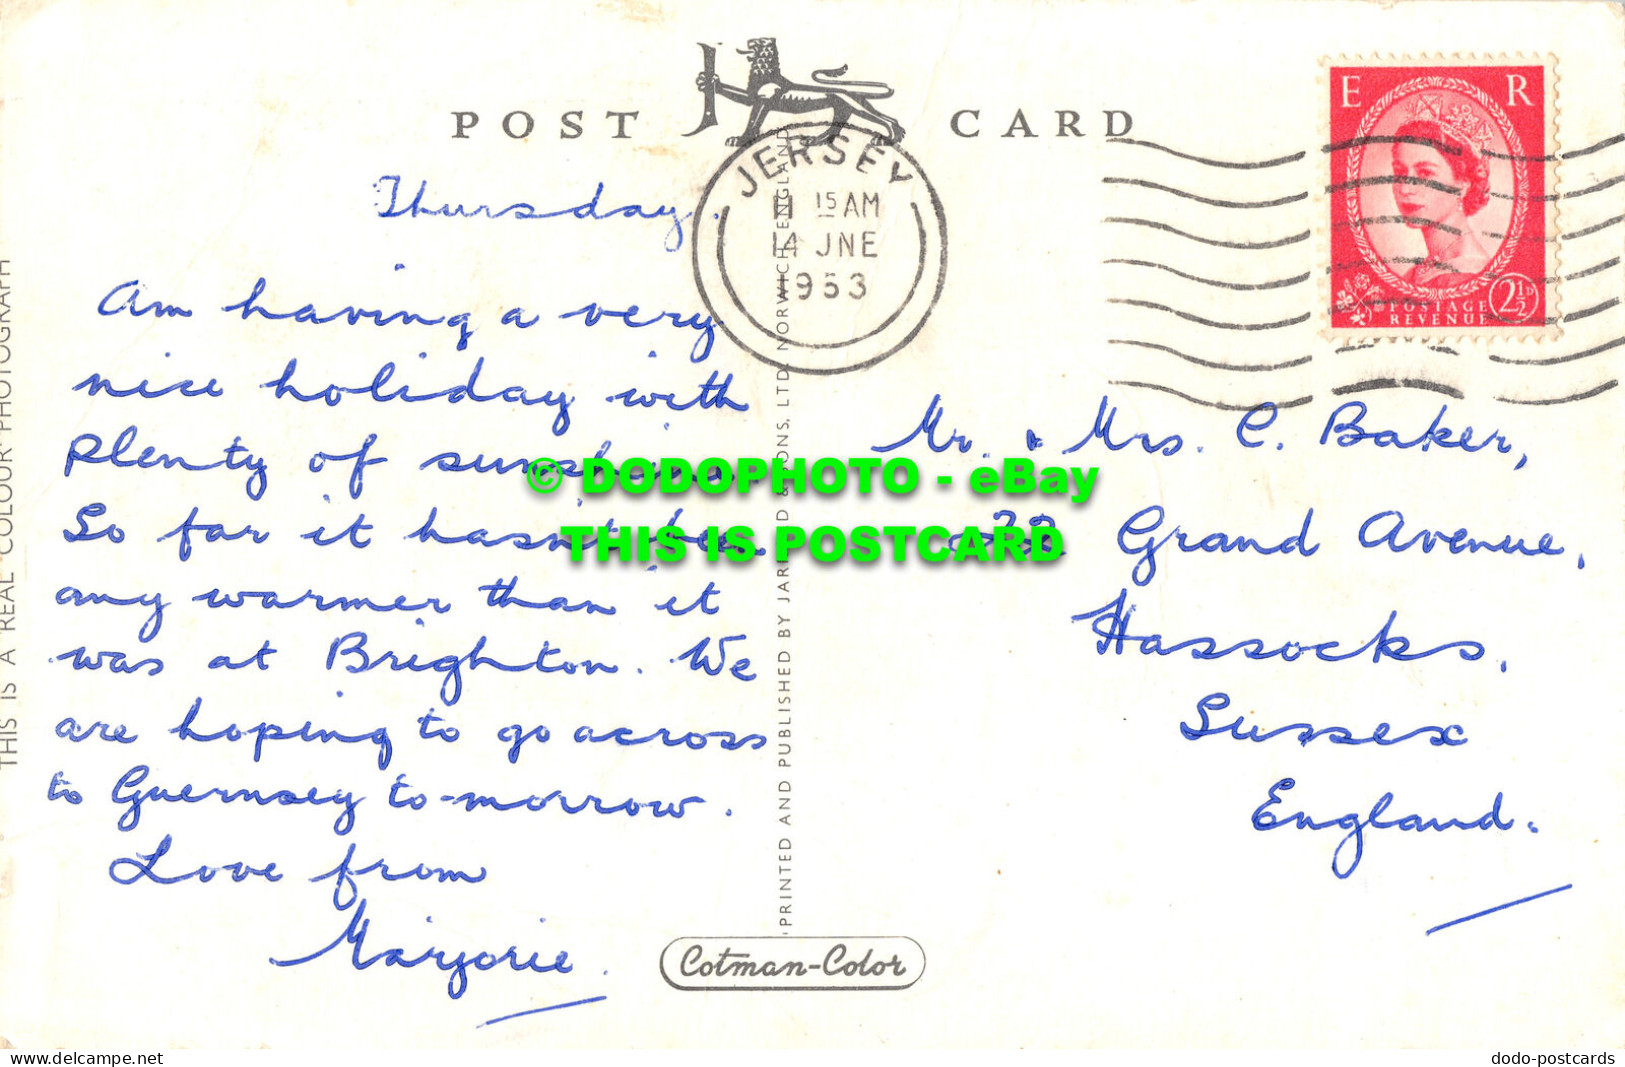 R521198 Jersey. Rozel Bay. Jarrold. RP. Postcard. 1953 - Monde